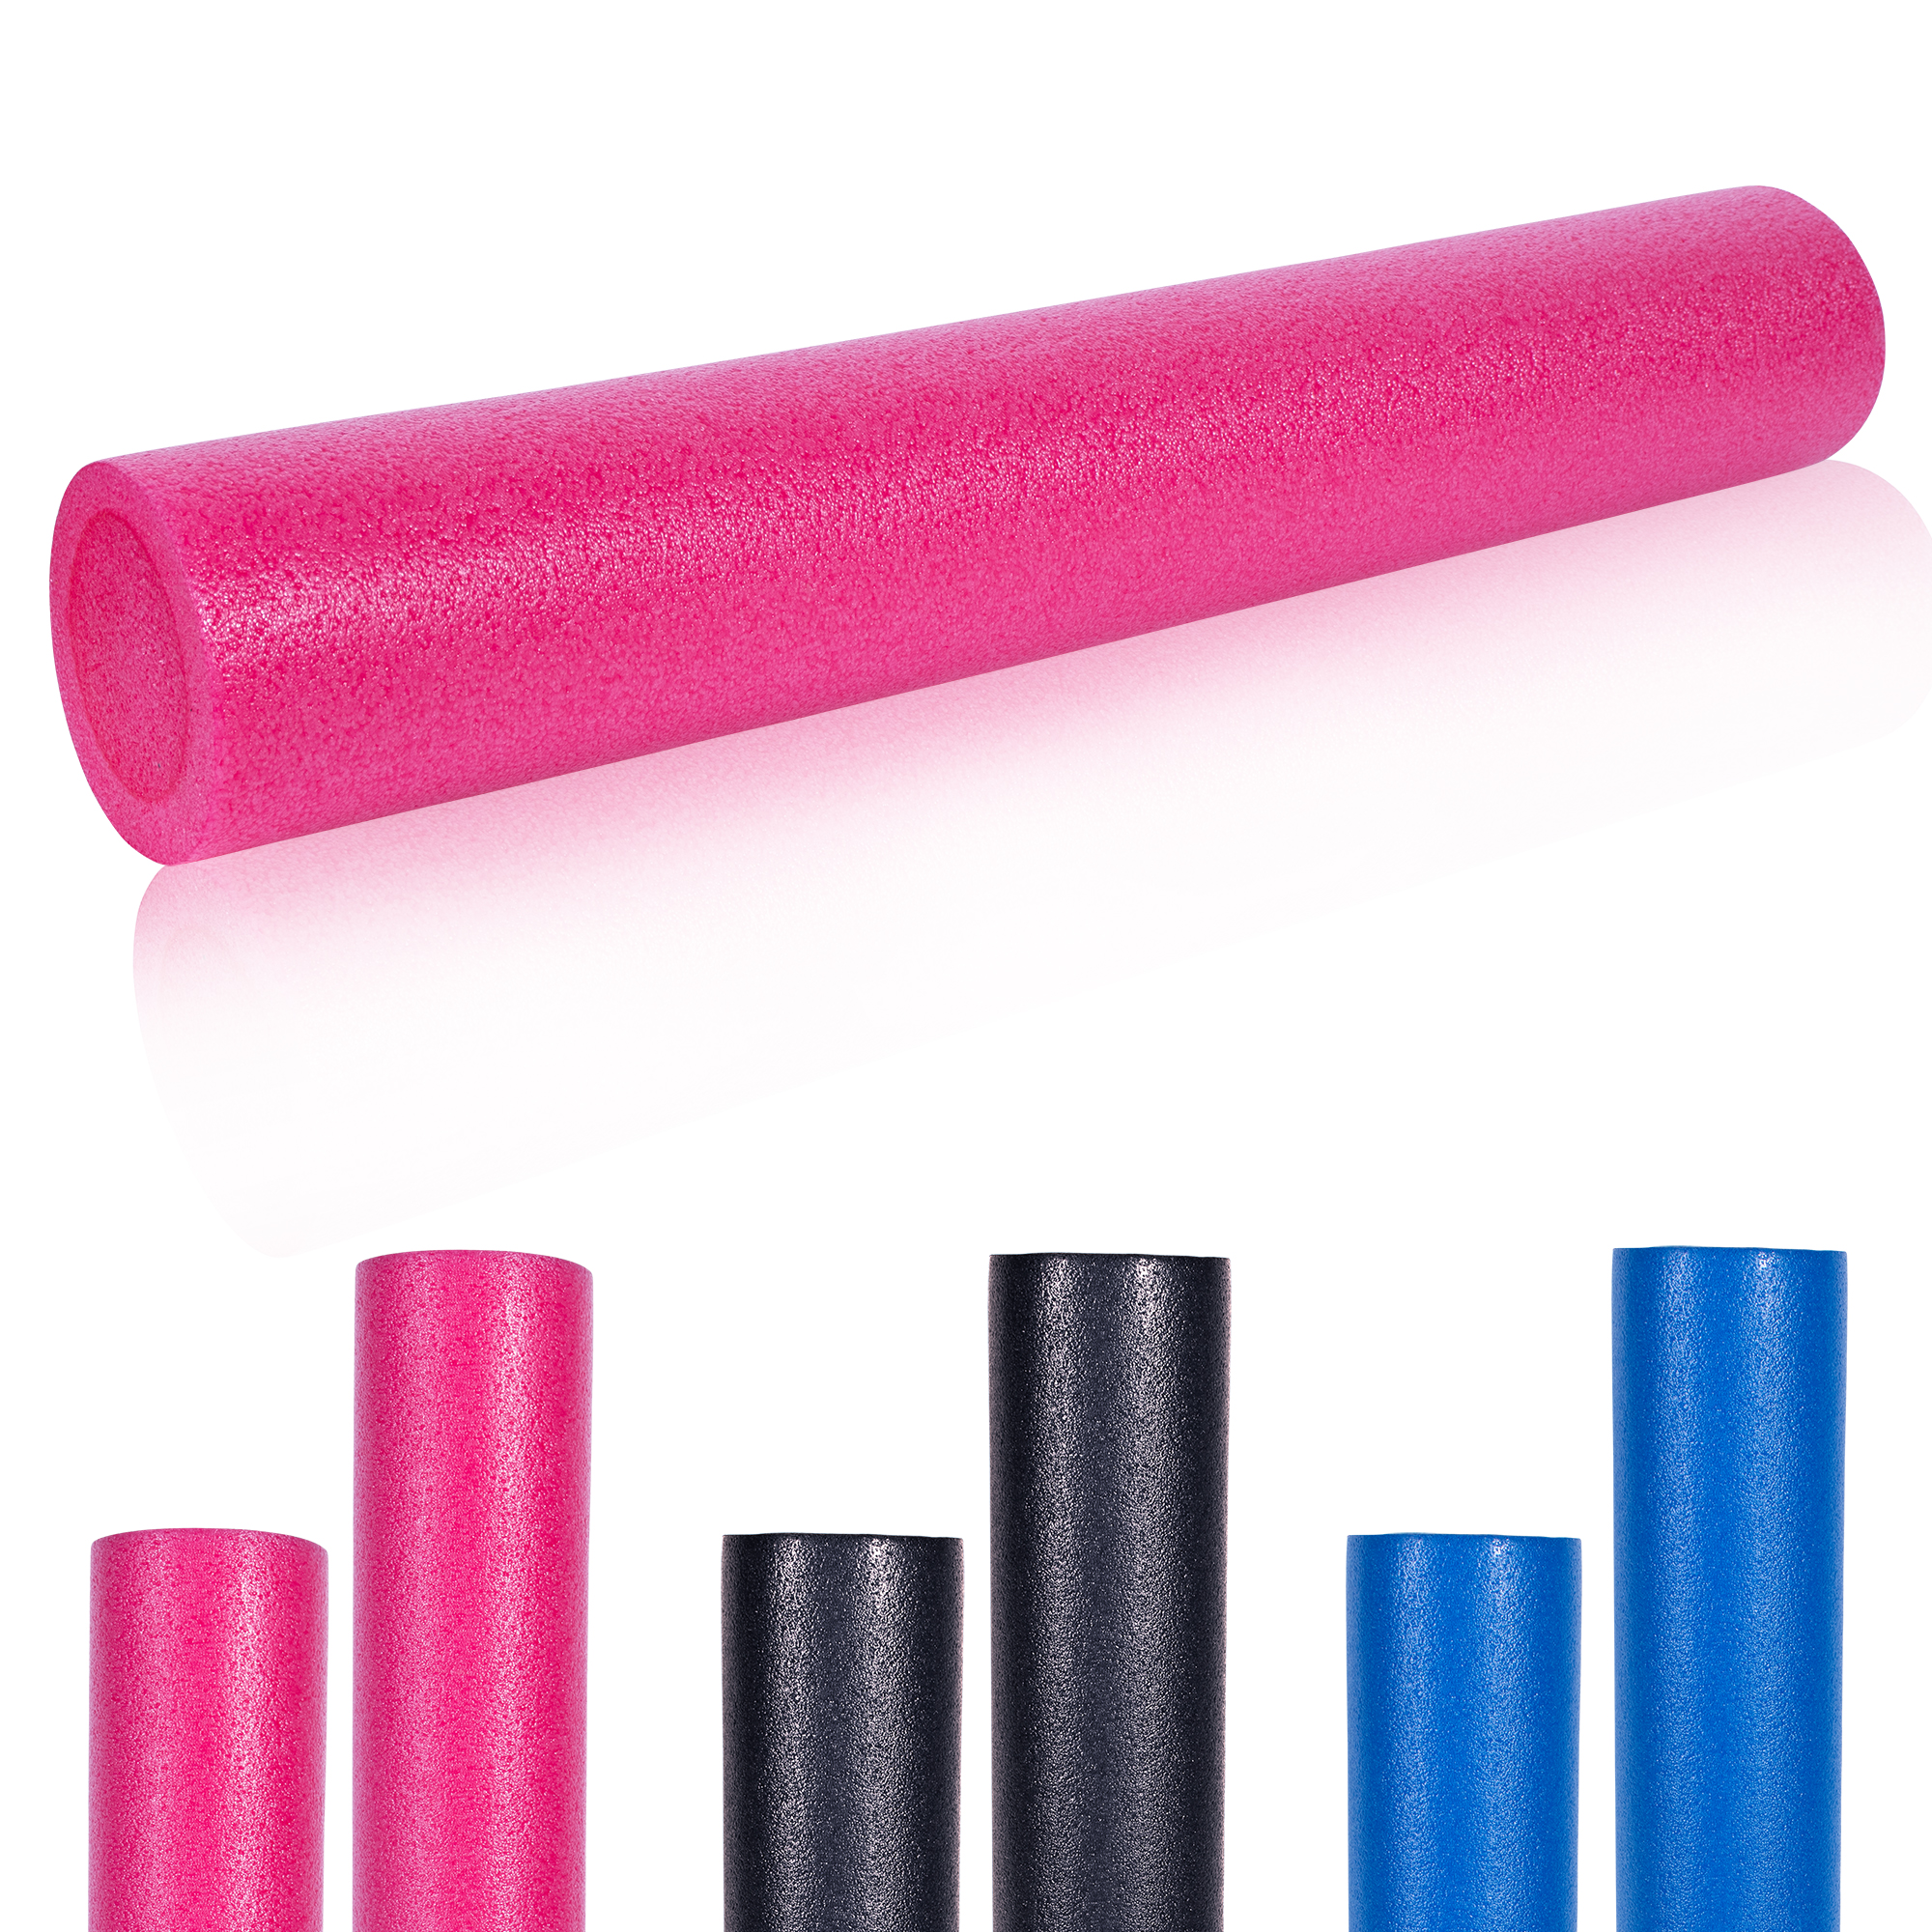 GORILLA SPORTSÂ® Rouleau de Pilates en mousse 90 x 15 cm - Rouleau de yoga pour l'auto-massage et la stimulation des fascias - Coloris rose